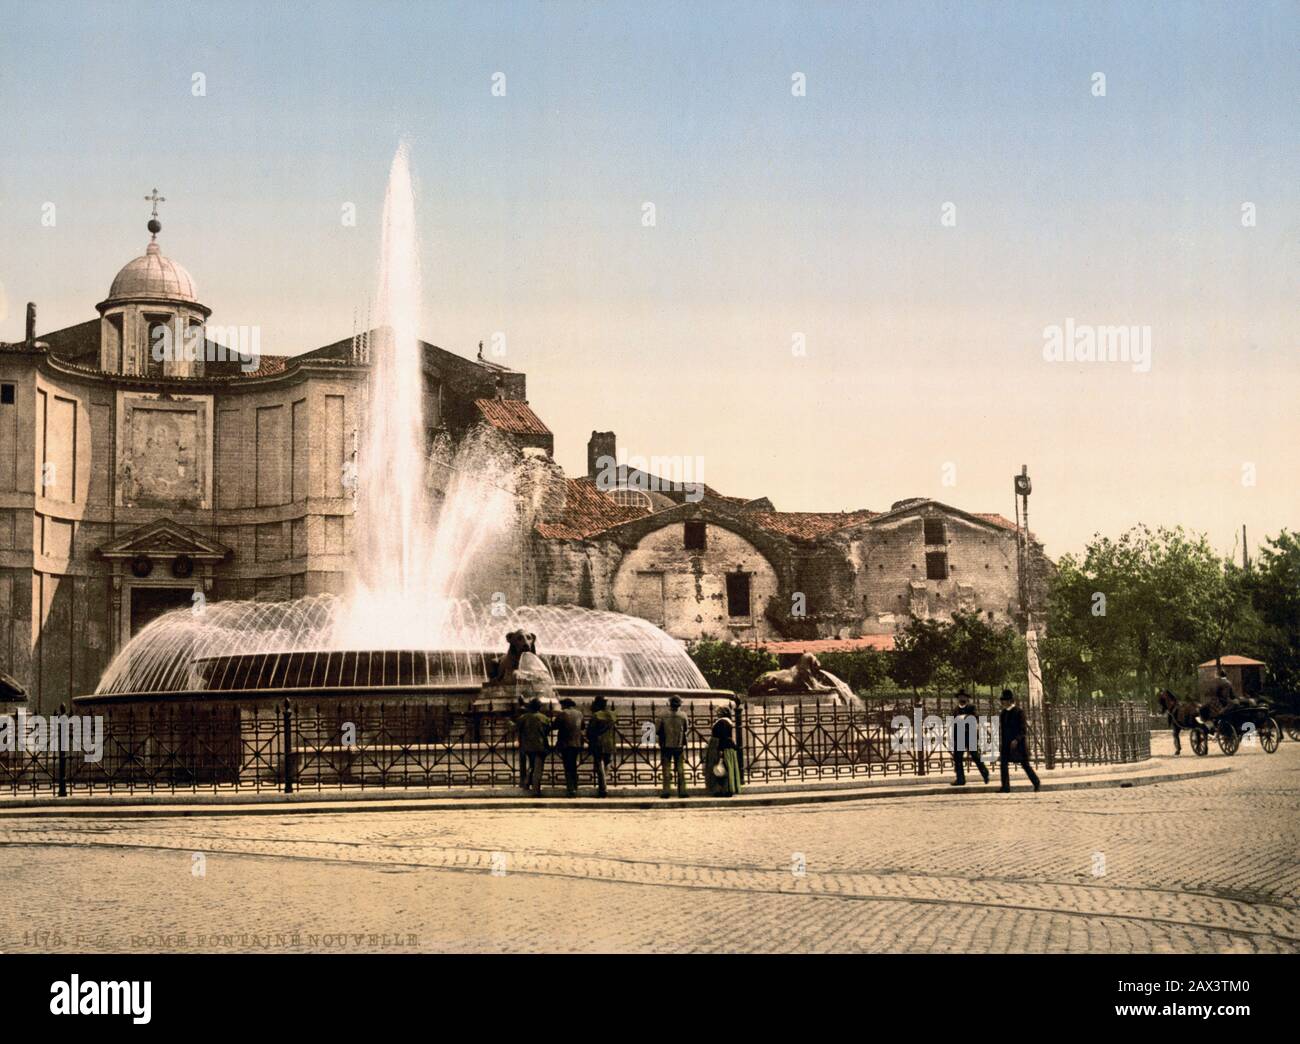 1895 ca. , ROMA, ITALIE : Piazza DELL' ESEDRA ( aujourd'hui Piazza della Repubblica ) avec la fontaine originale ( reconstruit plus tard avec le sculpteur Rutelli NAIADI statues vers 1910 CA, les lions ont été remplacés par la Piazza del Popolo Fontaine d'Obelisco ), En arrière-plan le TERME et l'église DE CHIESA DI SANTA MARIA DEGLI ANGELI . Photocrom print colors édité par Detroit Publishing Co. - CHIESA - ROME - LAZIO - ITALIA - FOTO STORICHE - HISTORY - GEOGRAFIA - GEOGRAPHY - ARCHITETTURA - ARCHITECTURE - fontana - BELLE EPOQUE - fontaine --- Archivio GBB Banque D'Images